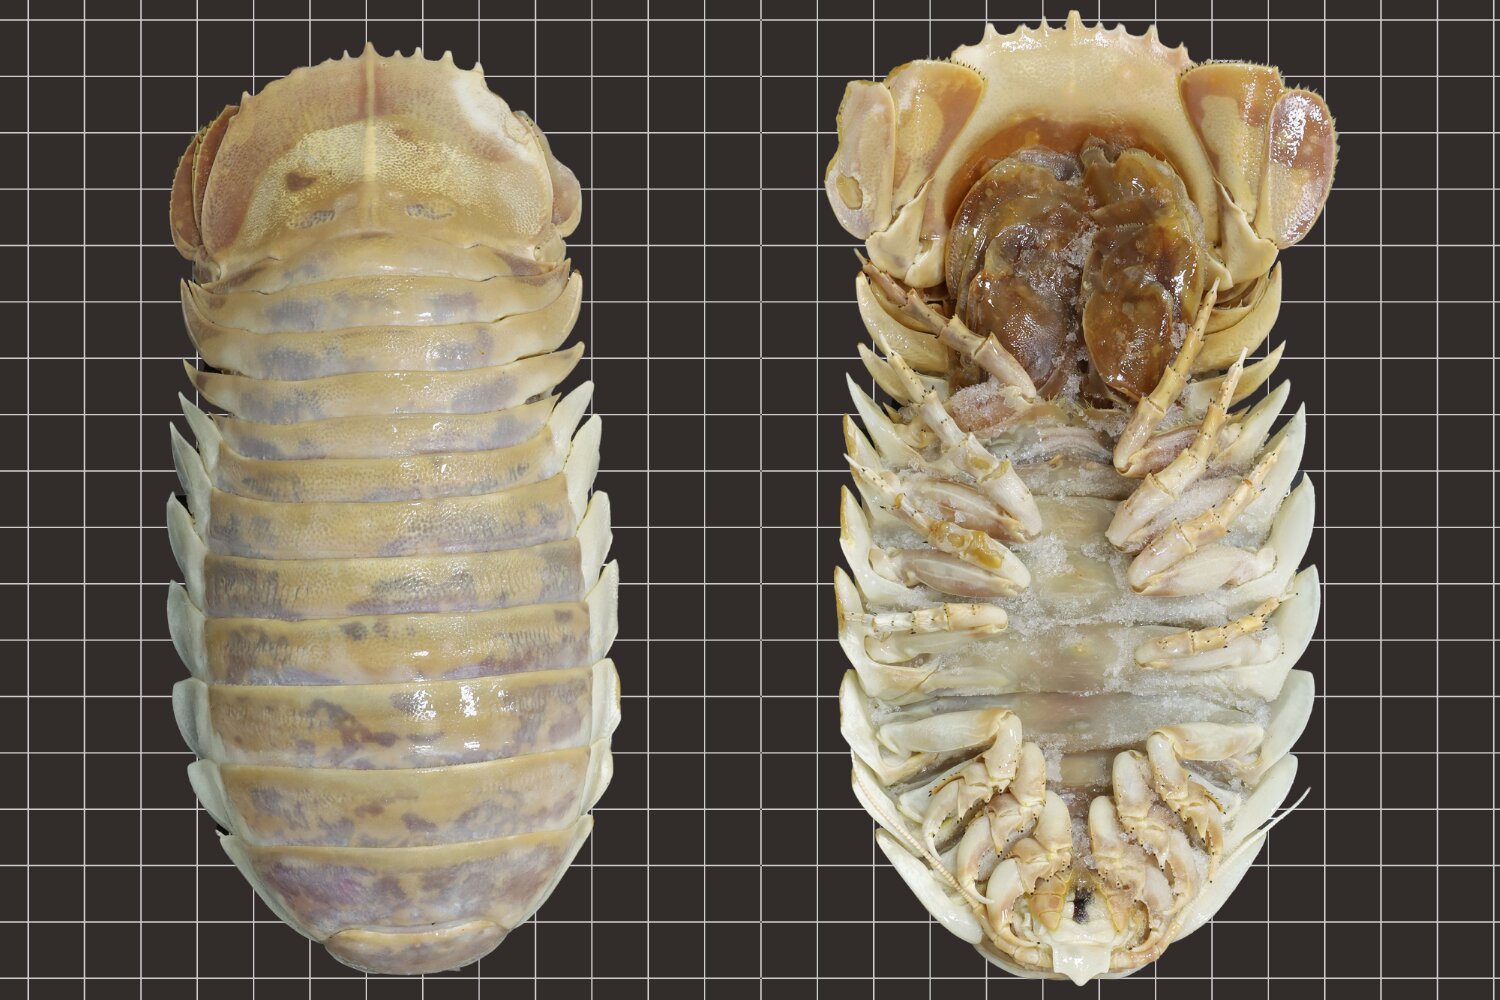 Isopode gigante di acque profonde scoperto a una profondità di 800 metri